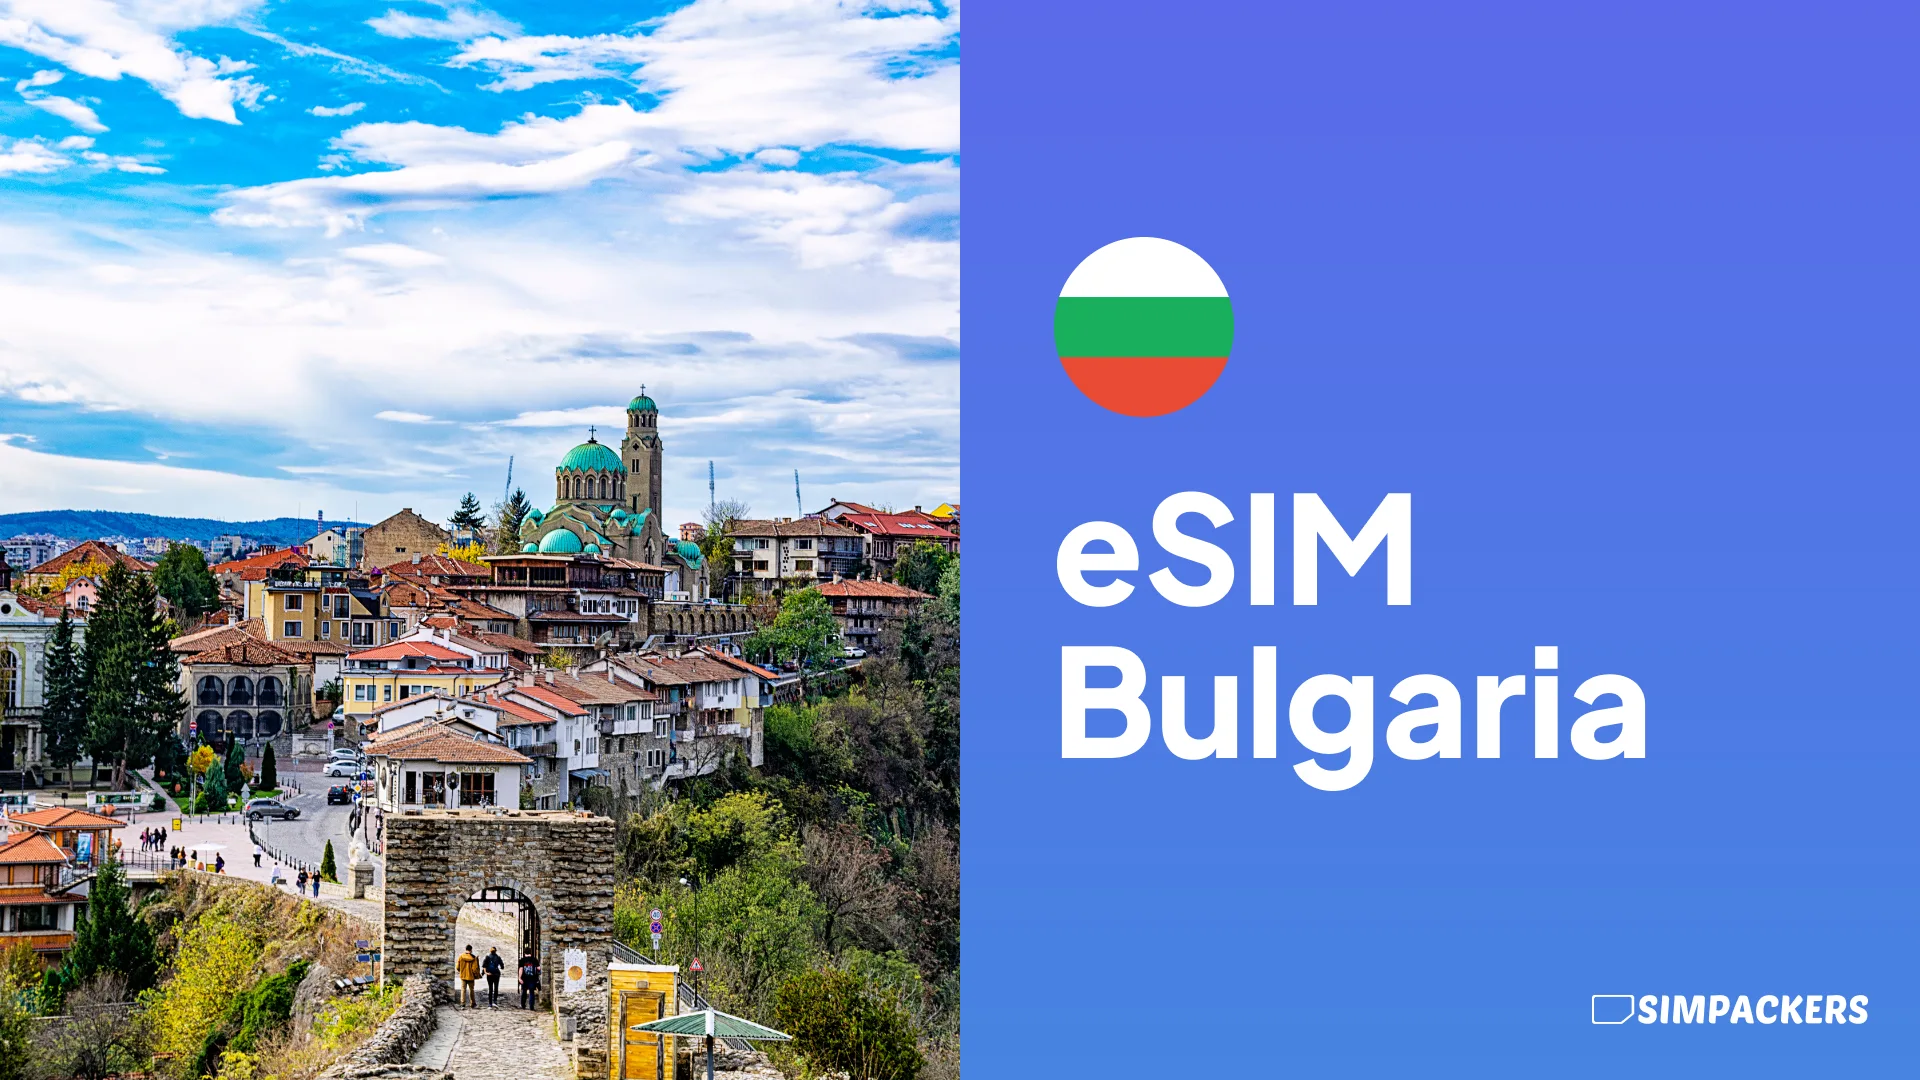 ES/FEATURED_IMAGES/esim-bulgaria.webp